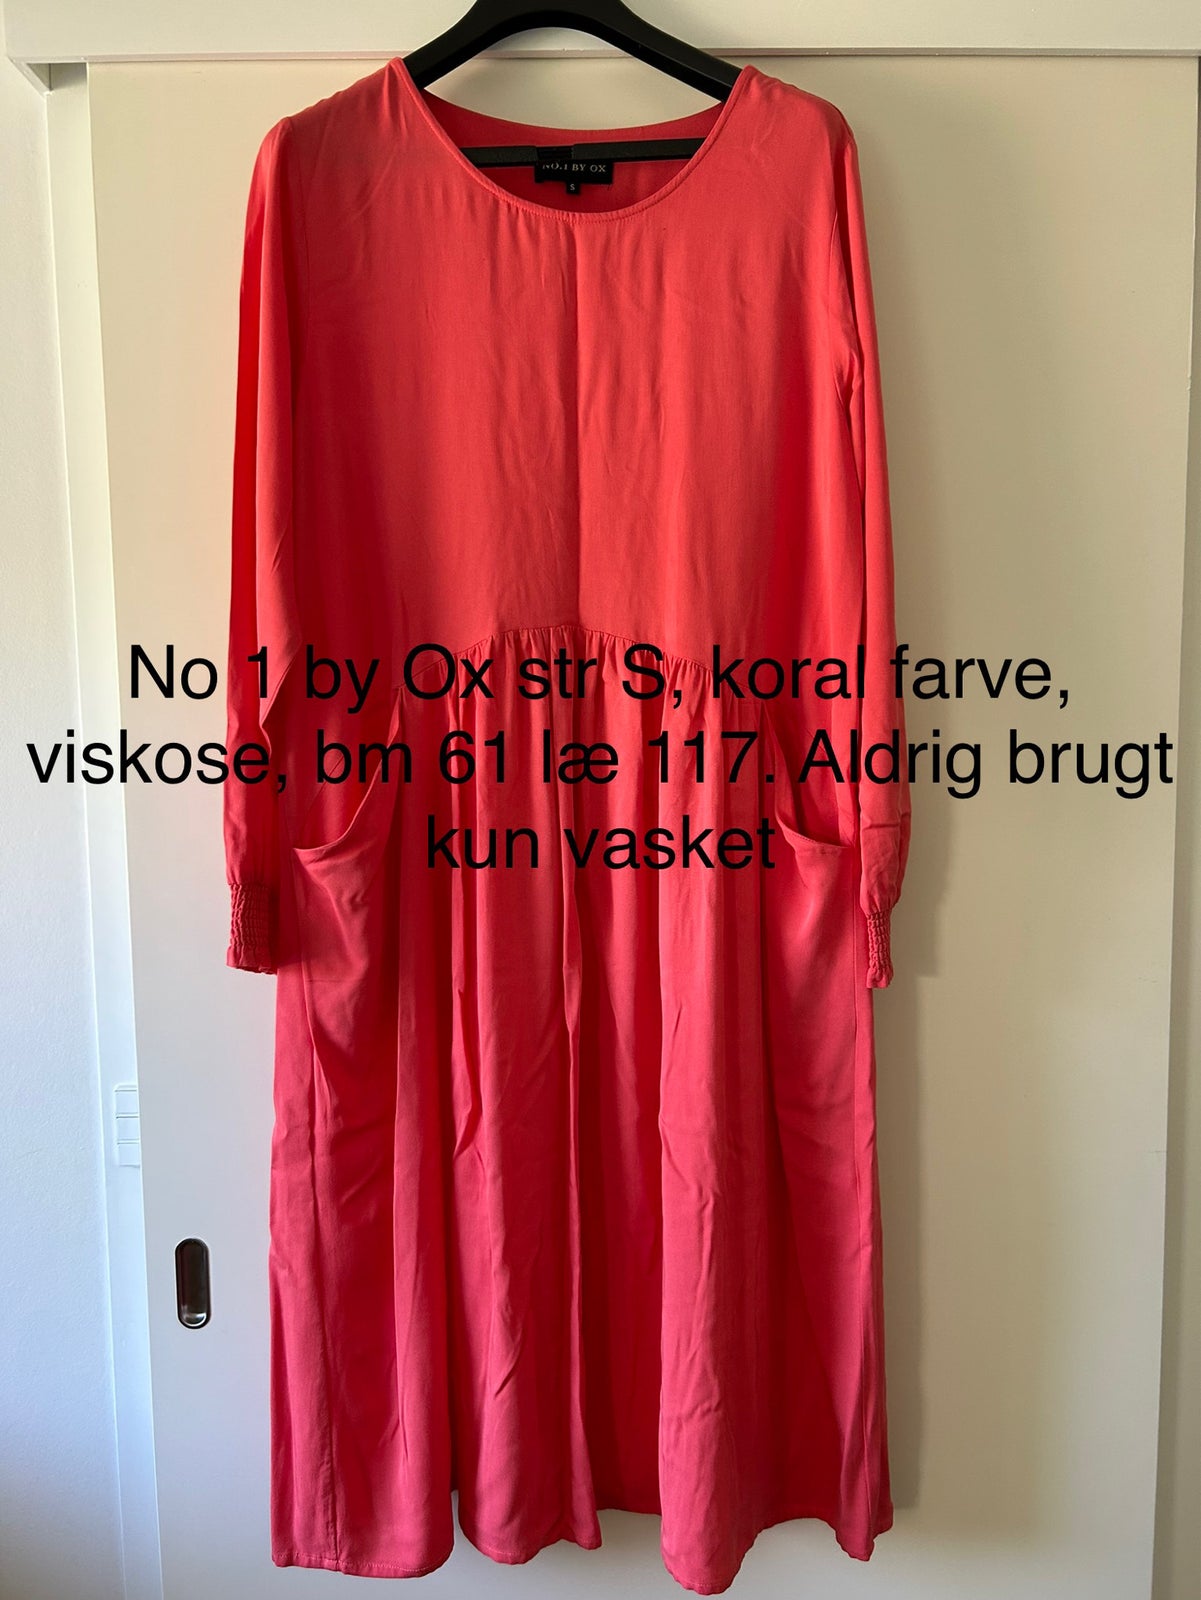 oplukker tjære Rummelig Anden kjole, No 1 by Ox, str. S – dba.dk – Køb og Salg af Nyt og Brugt